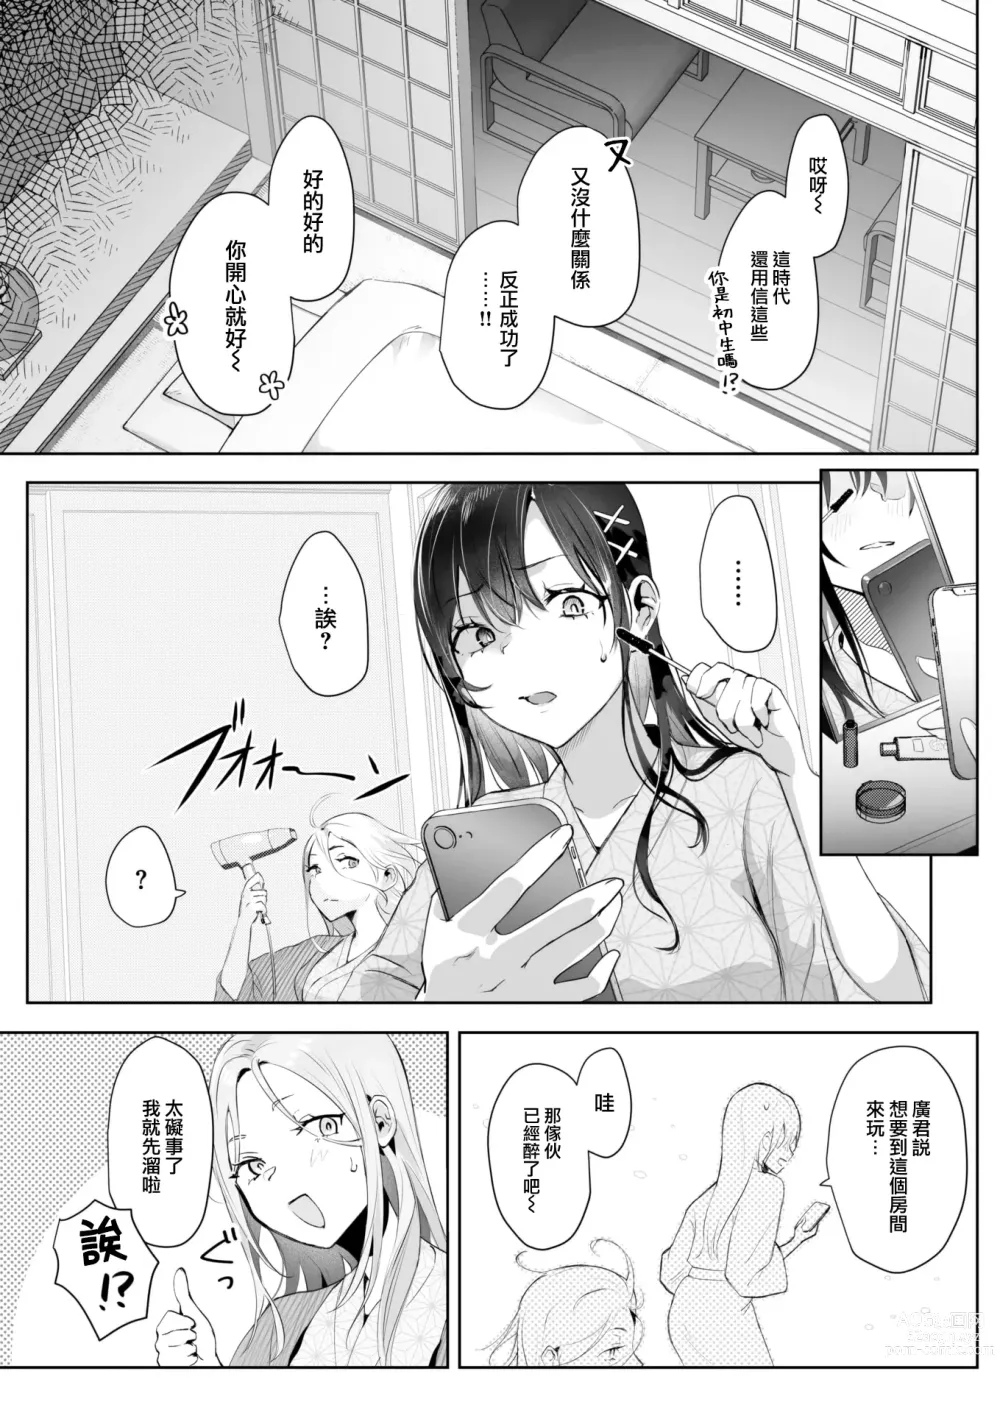 Page 6 of manga Koibumi Confusion